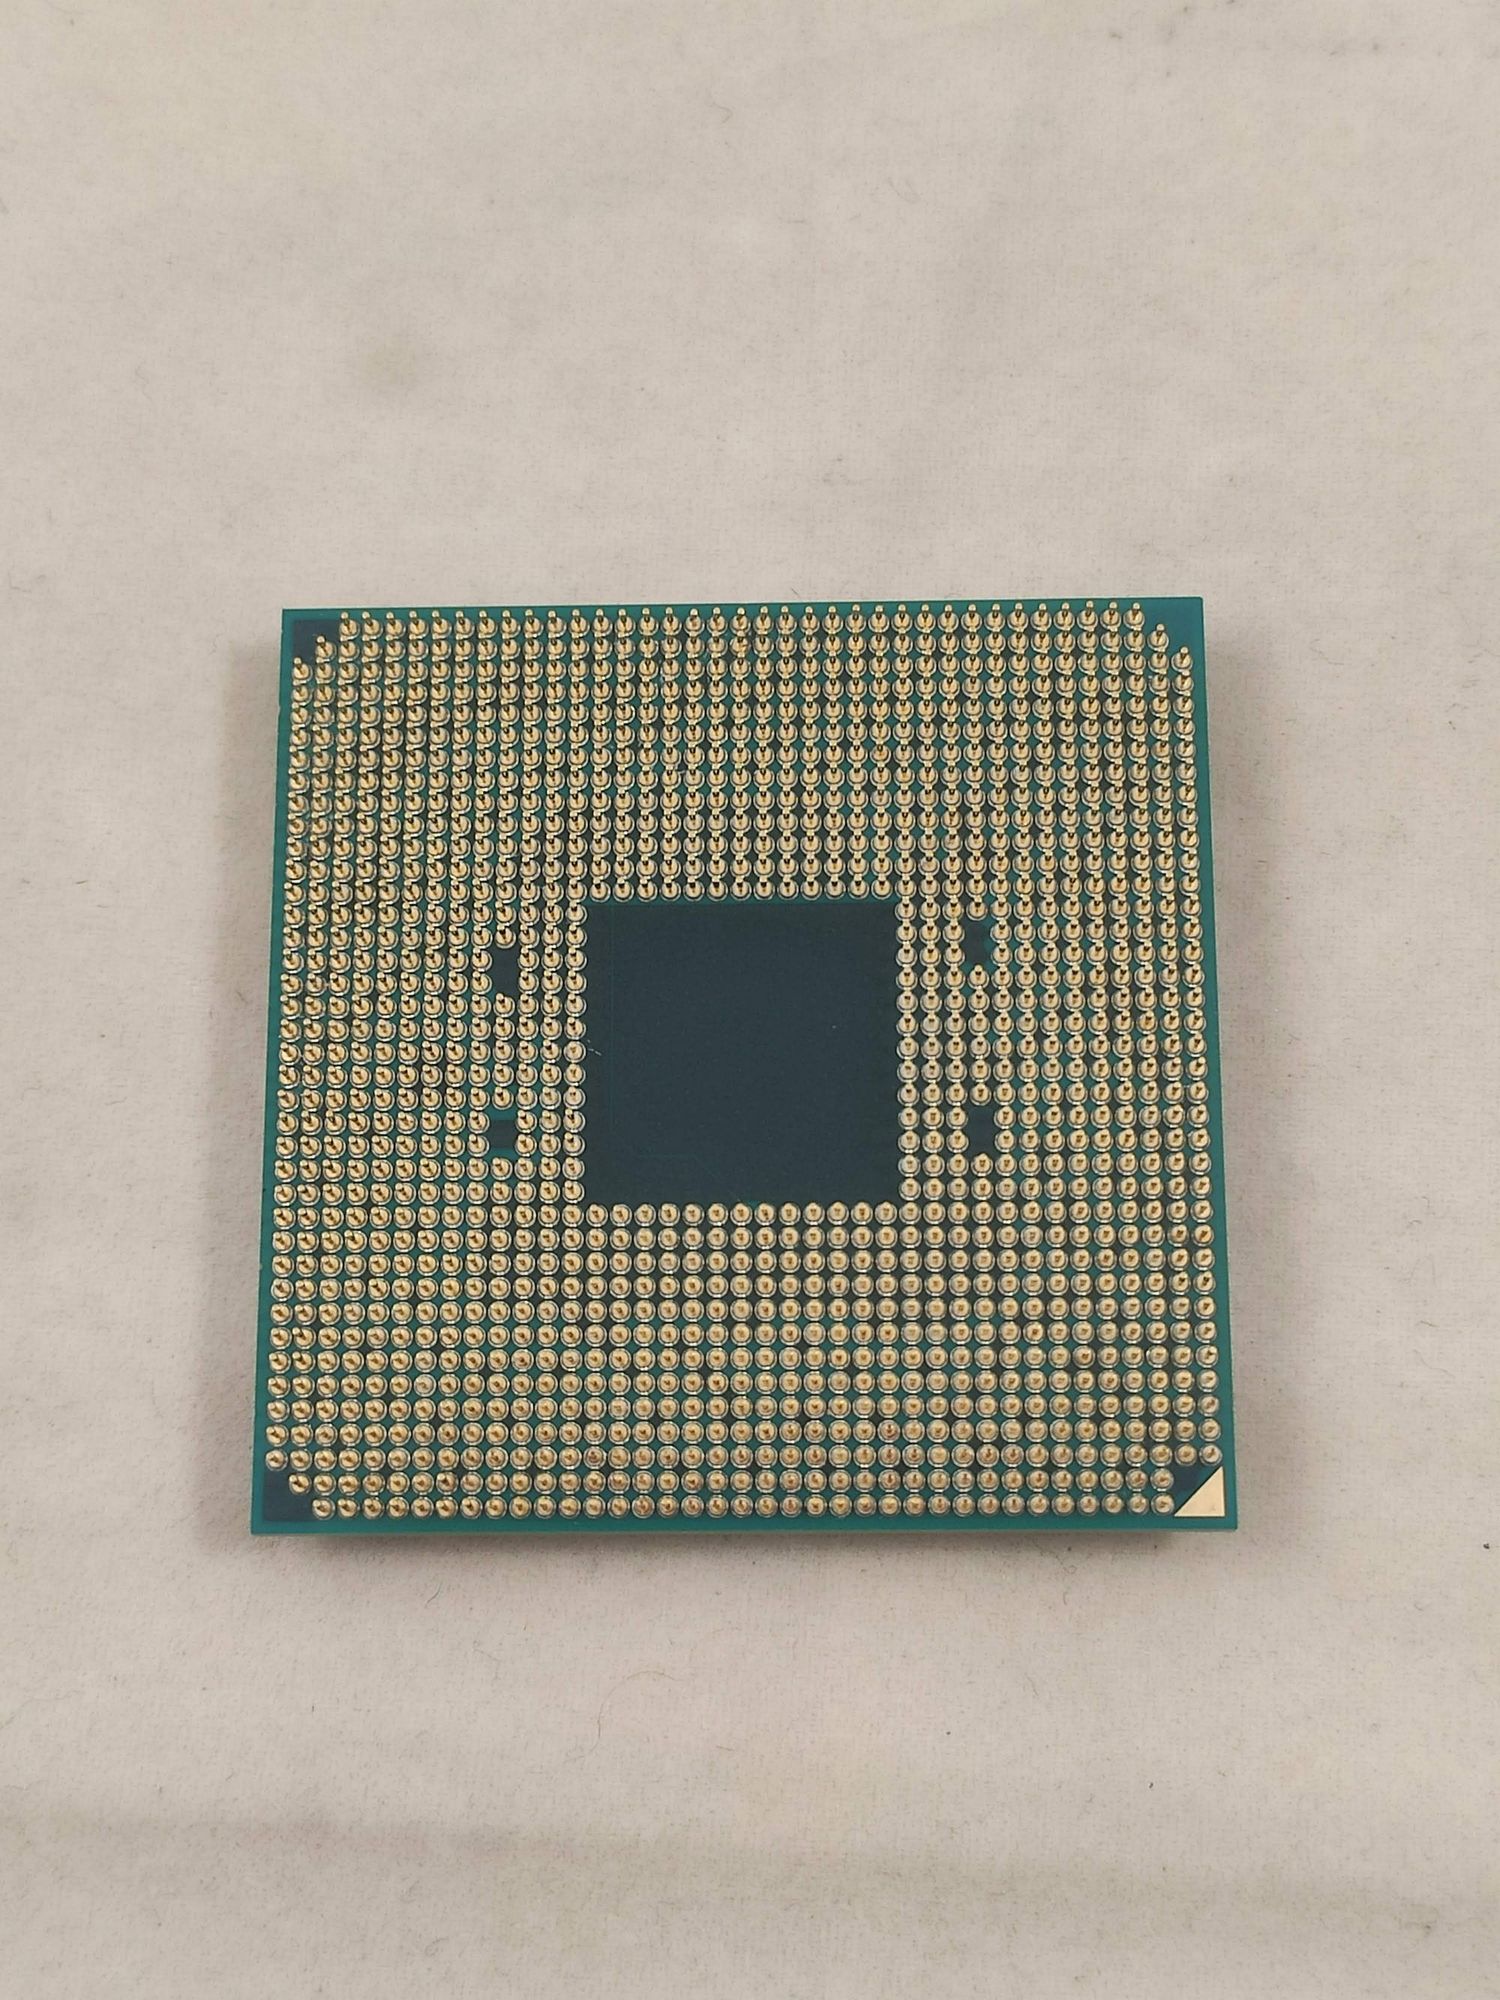 Процессор AMD Ryzen 5 2600X AM4 OEM (YD260XBCM6IAF) уцененный (гарантия 14 дней) - фото 3